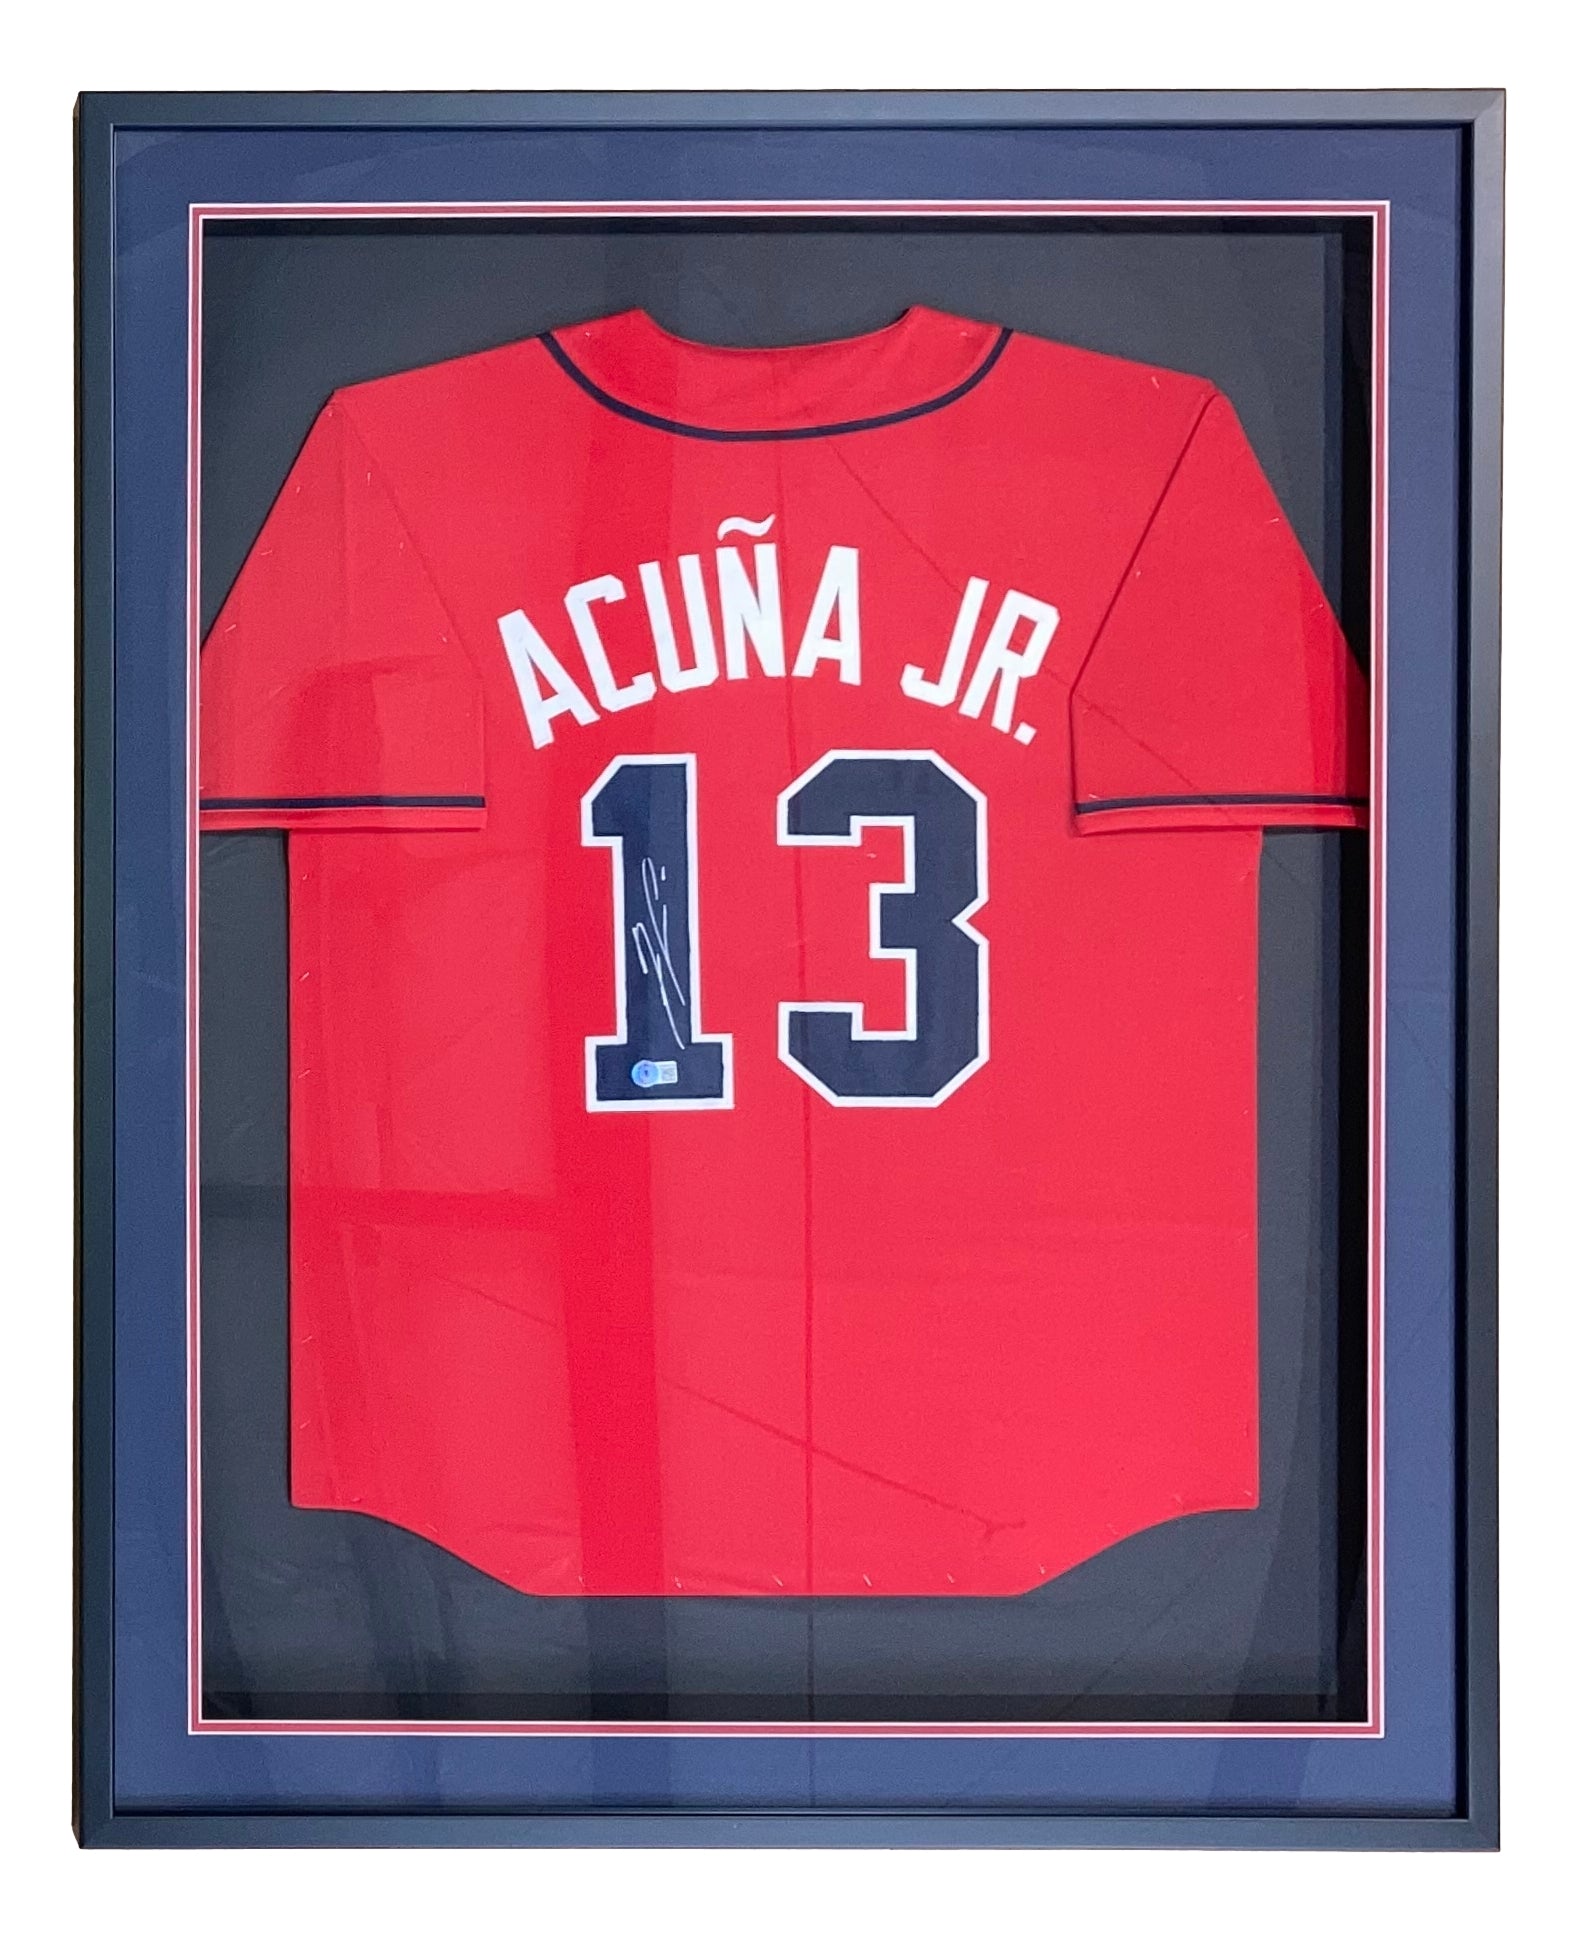 acuna jr baseball jersey